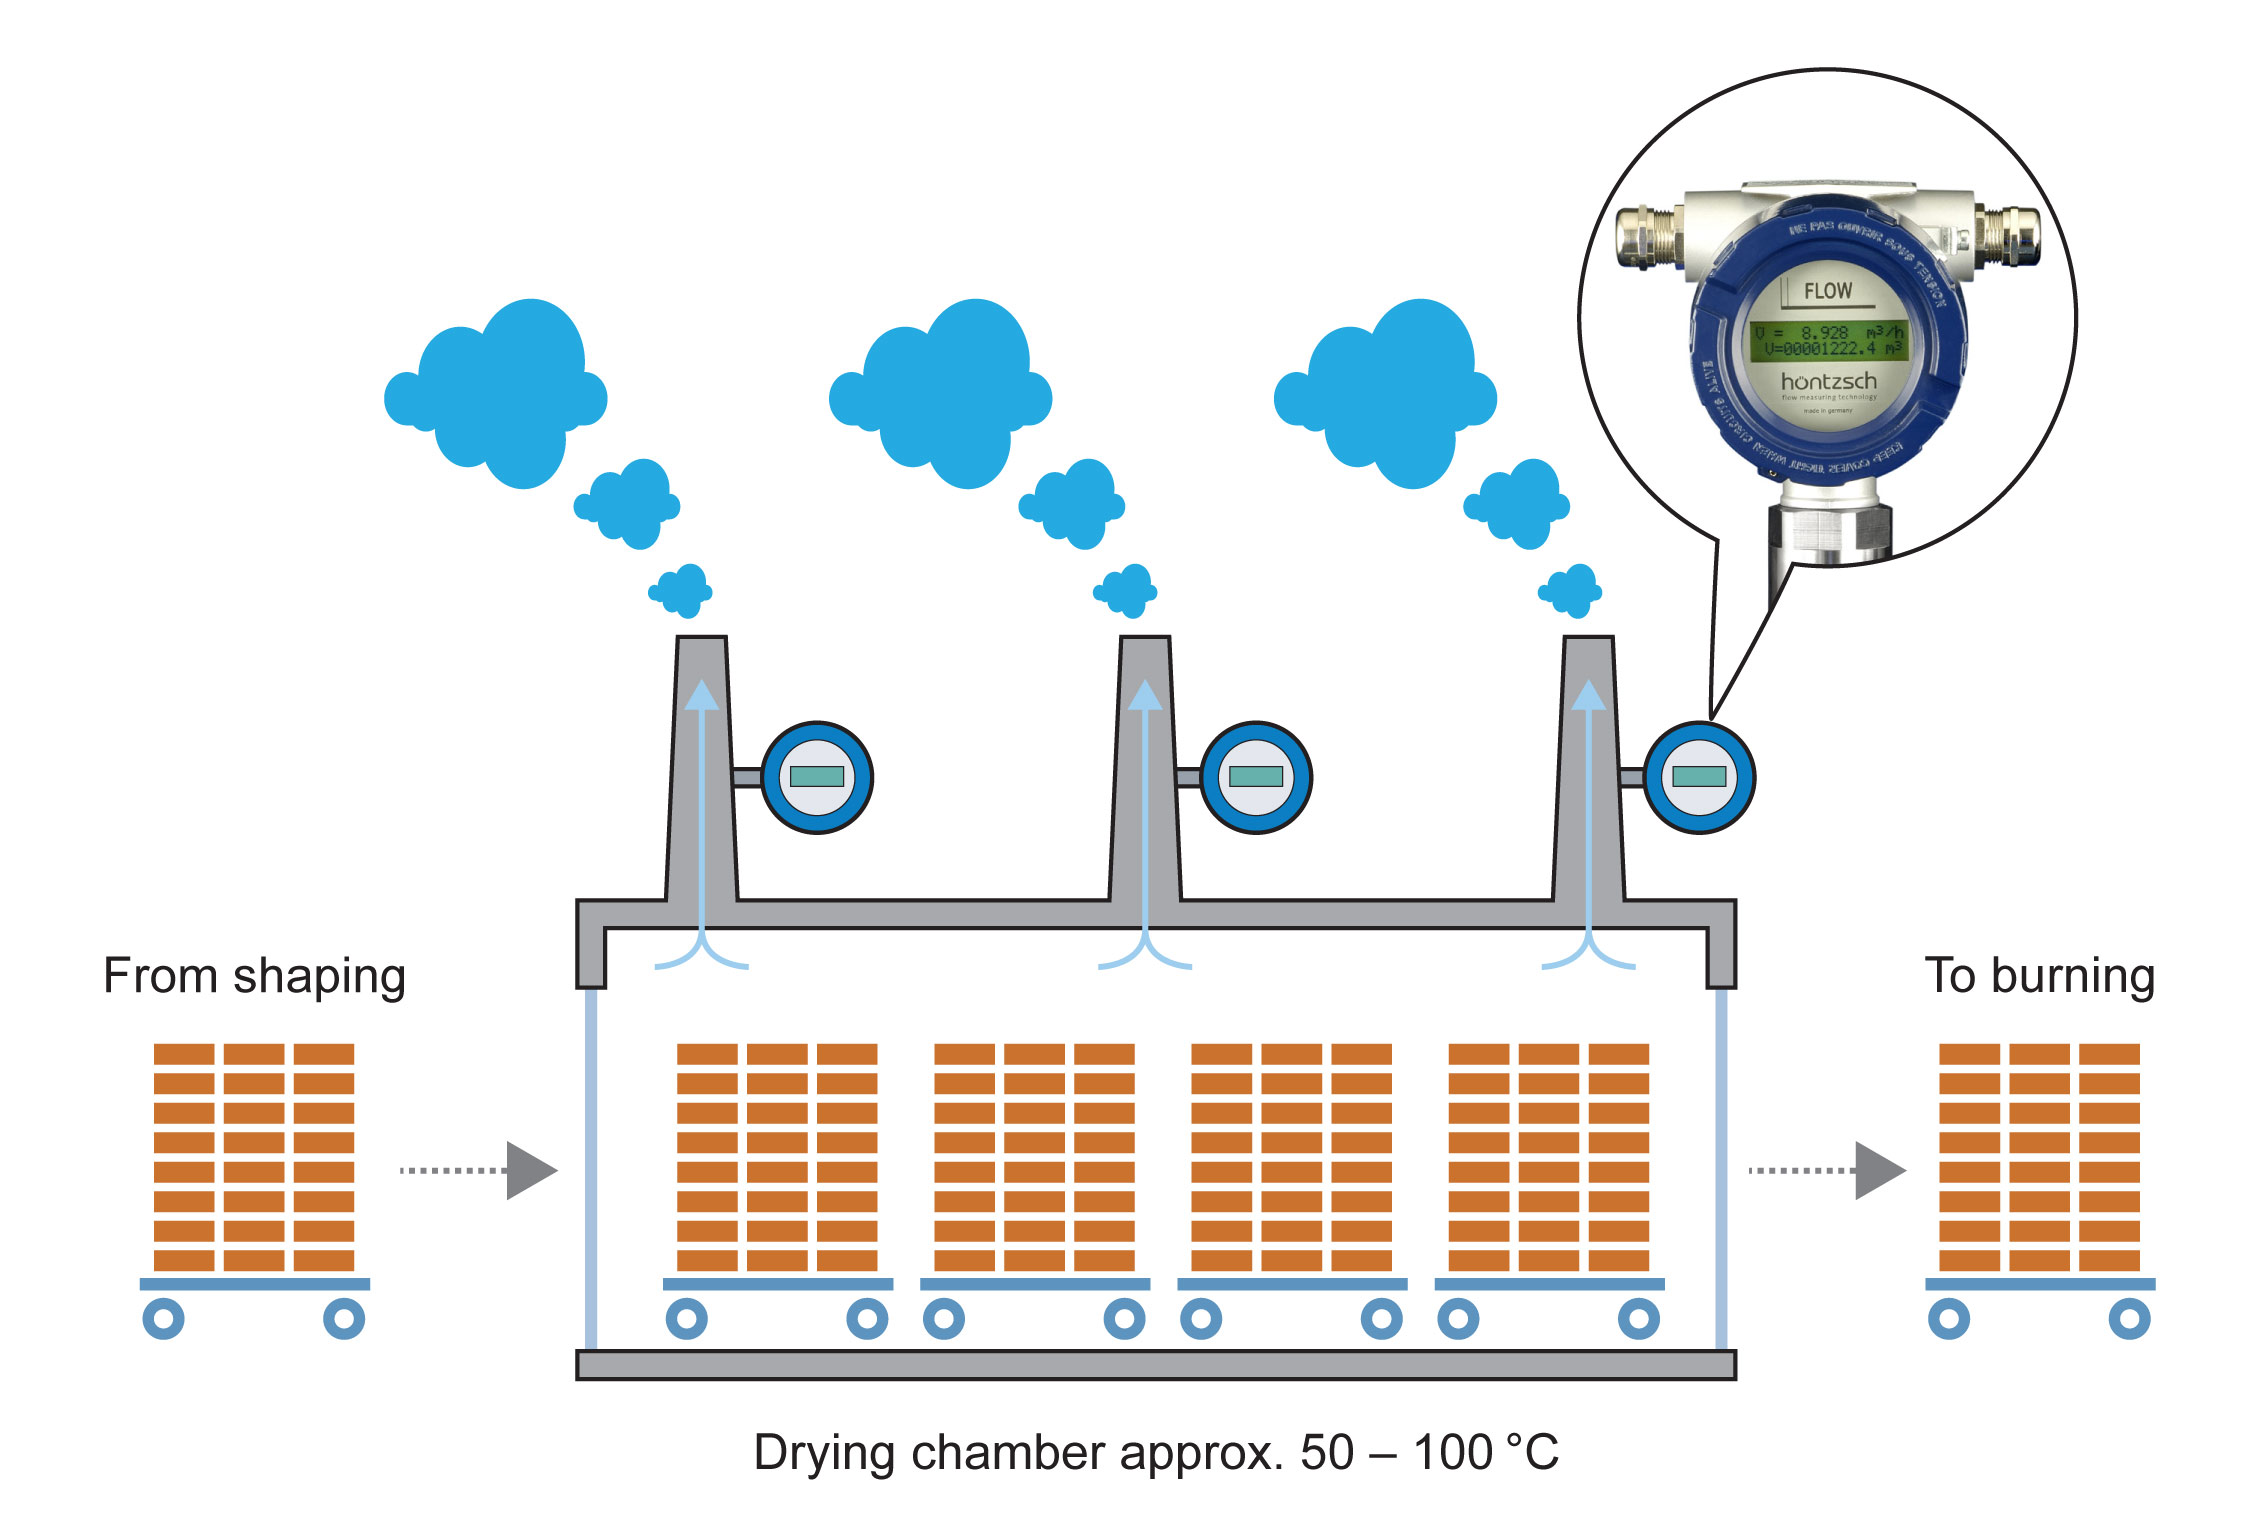 Measurements of exhaust air to regulate drying chambers in brick factories, Hoentzsch flow